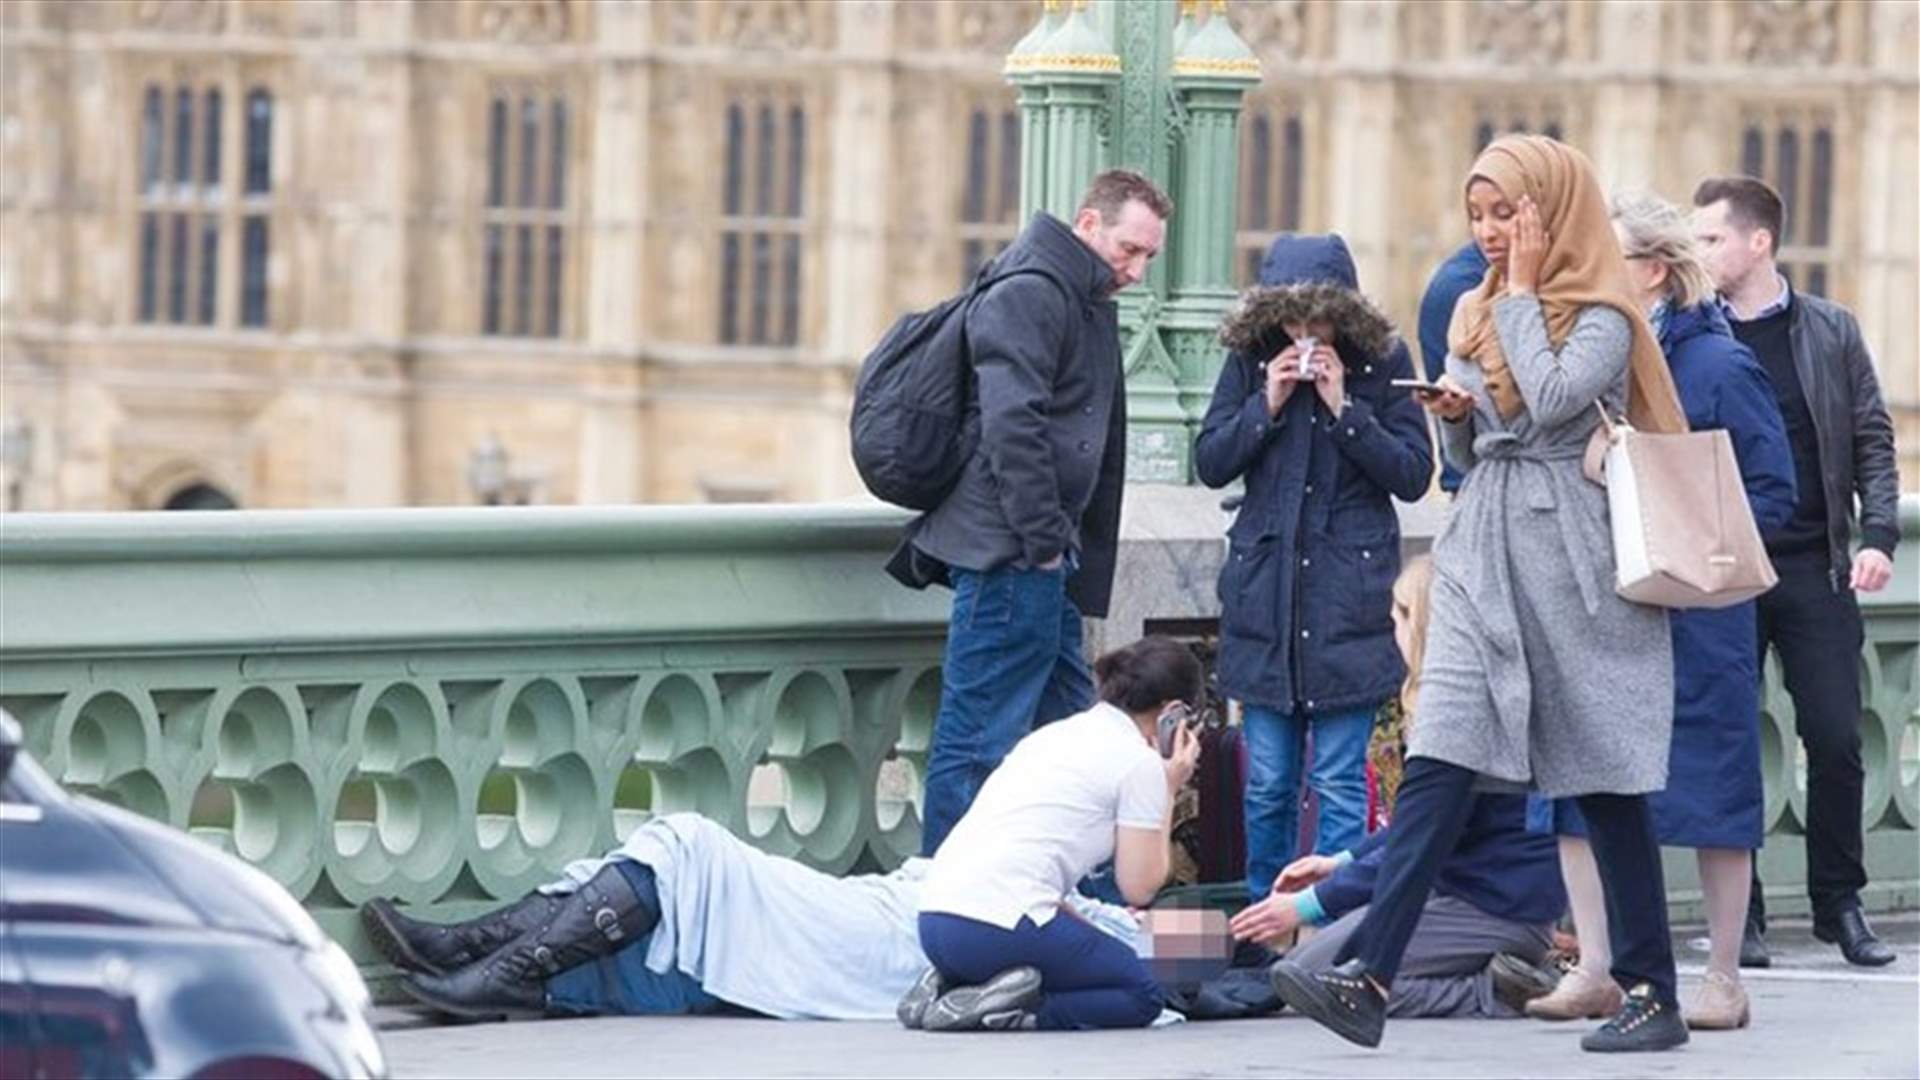 ما حقيقة صورة الشابة المحجبة التي أثارت غضب الملايين بعد إعتداء لندن؟